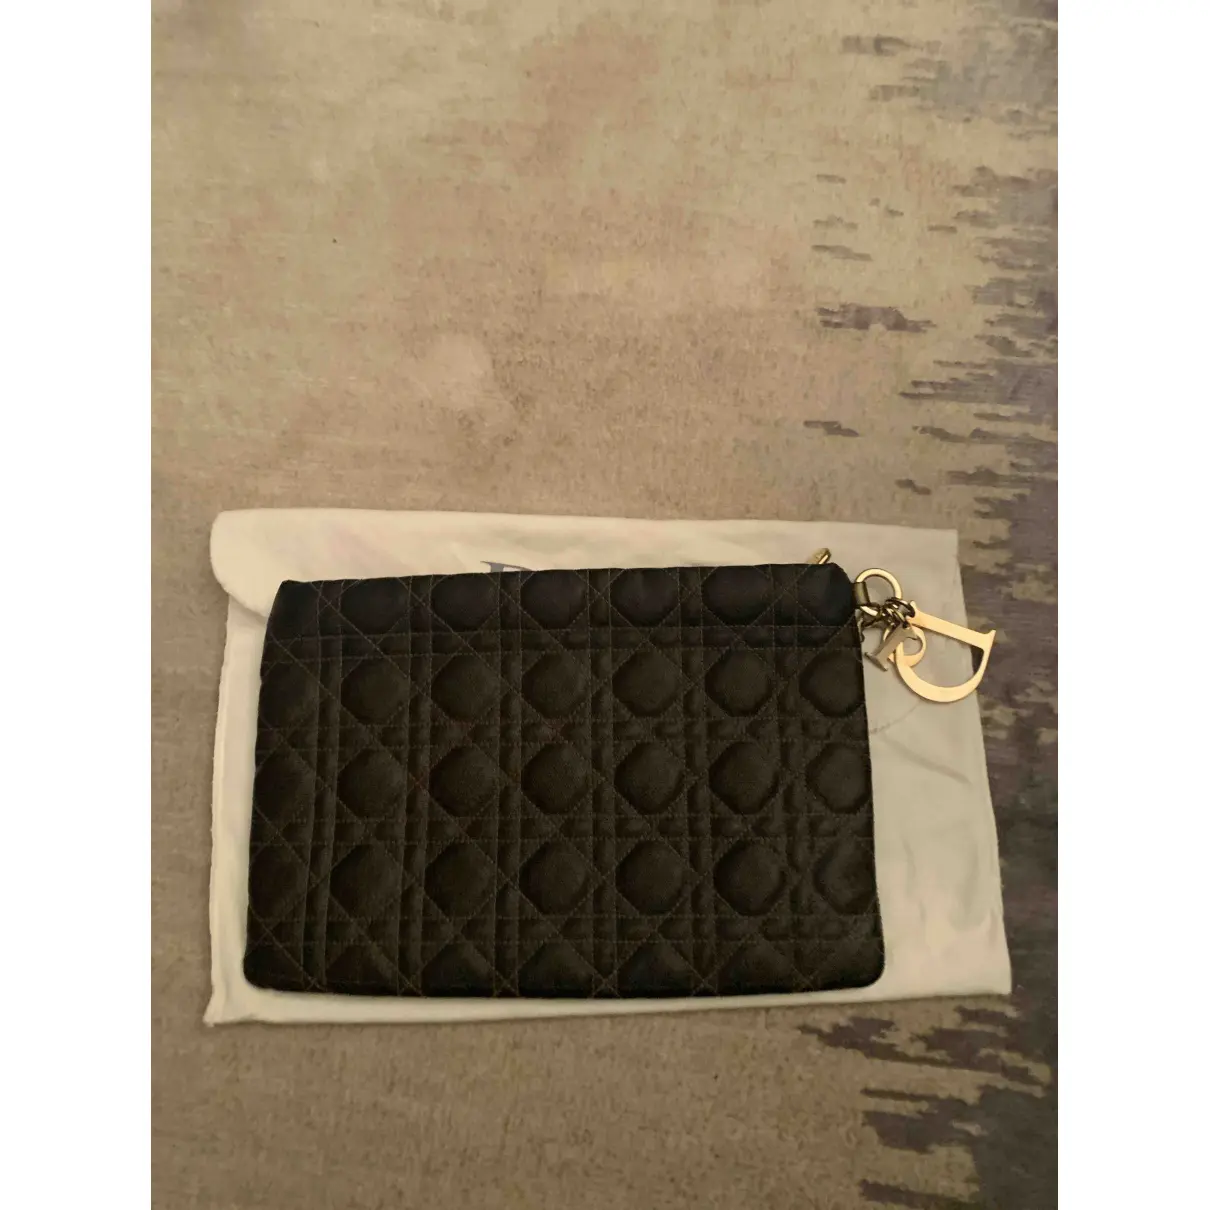 Buy Dior Lady Dior cloth clutch bag online